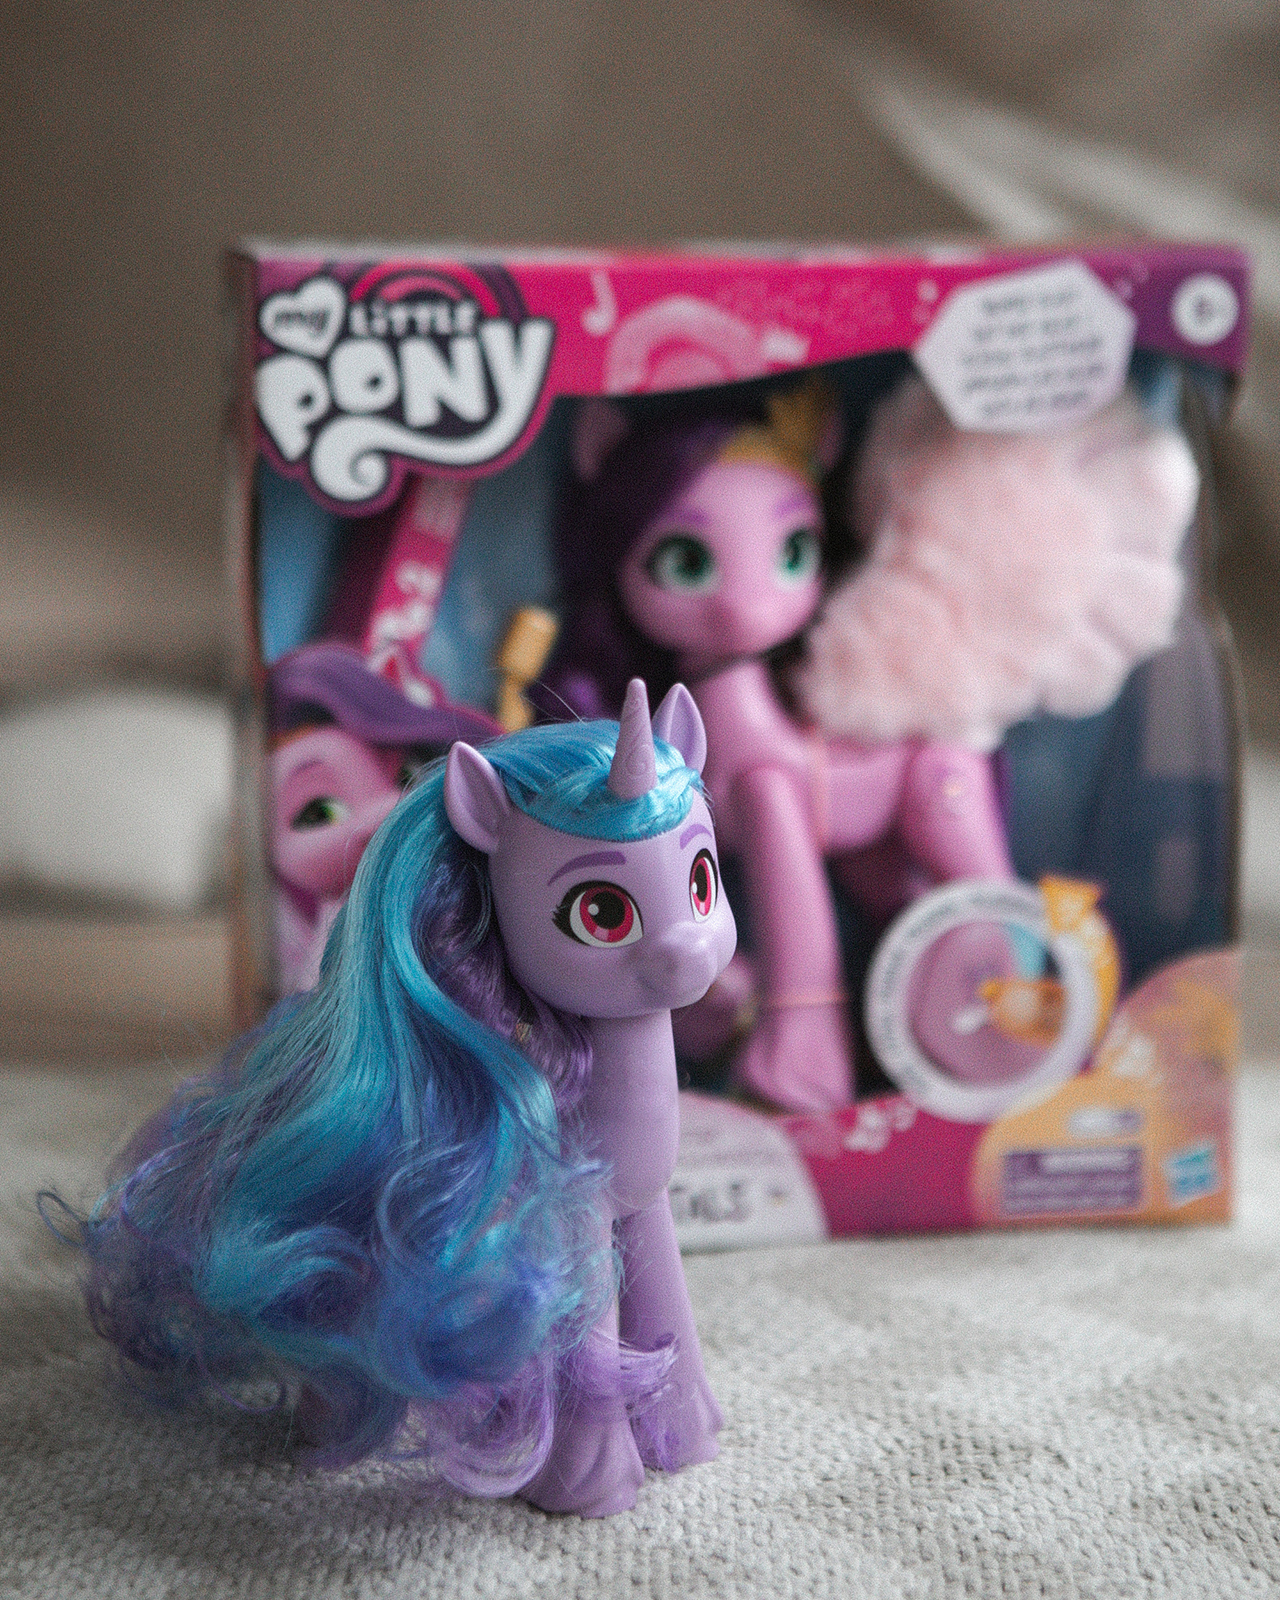 Игрушка My Little Pony Пони фильм Очаровательная Иззи F20325L0 - фото 14